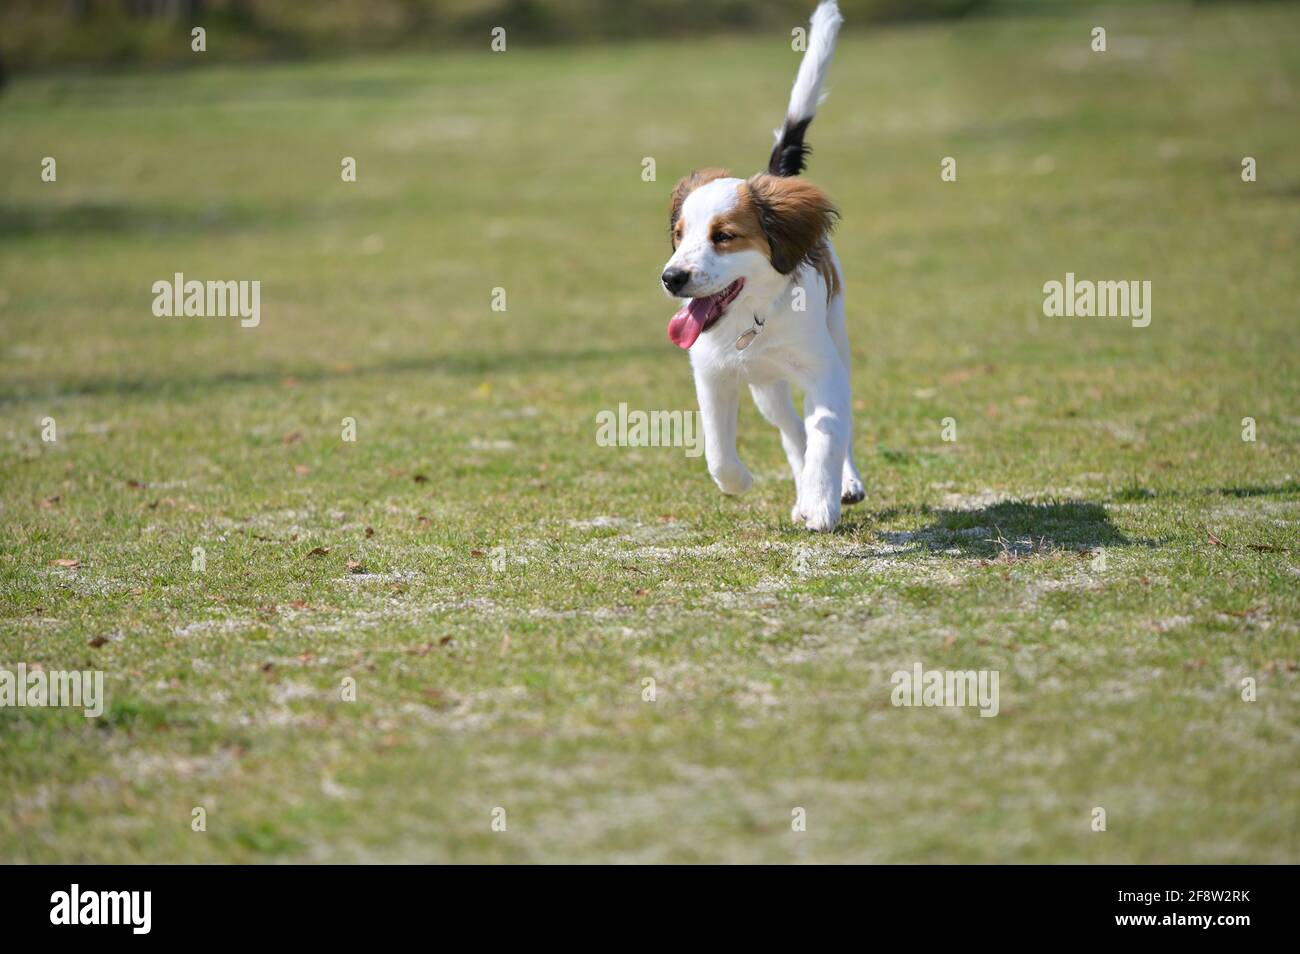 Joyeux jeune chien koiker de race pure courant sur l'herbe avec sa langue dehors. Banque D'Images